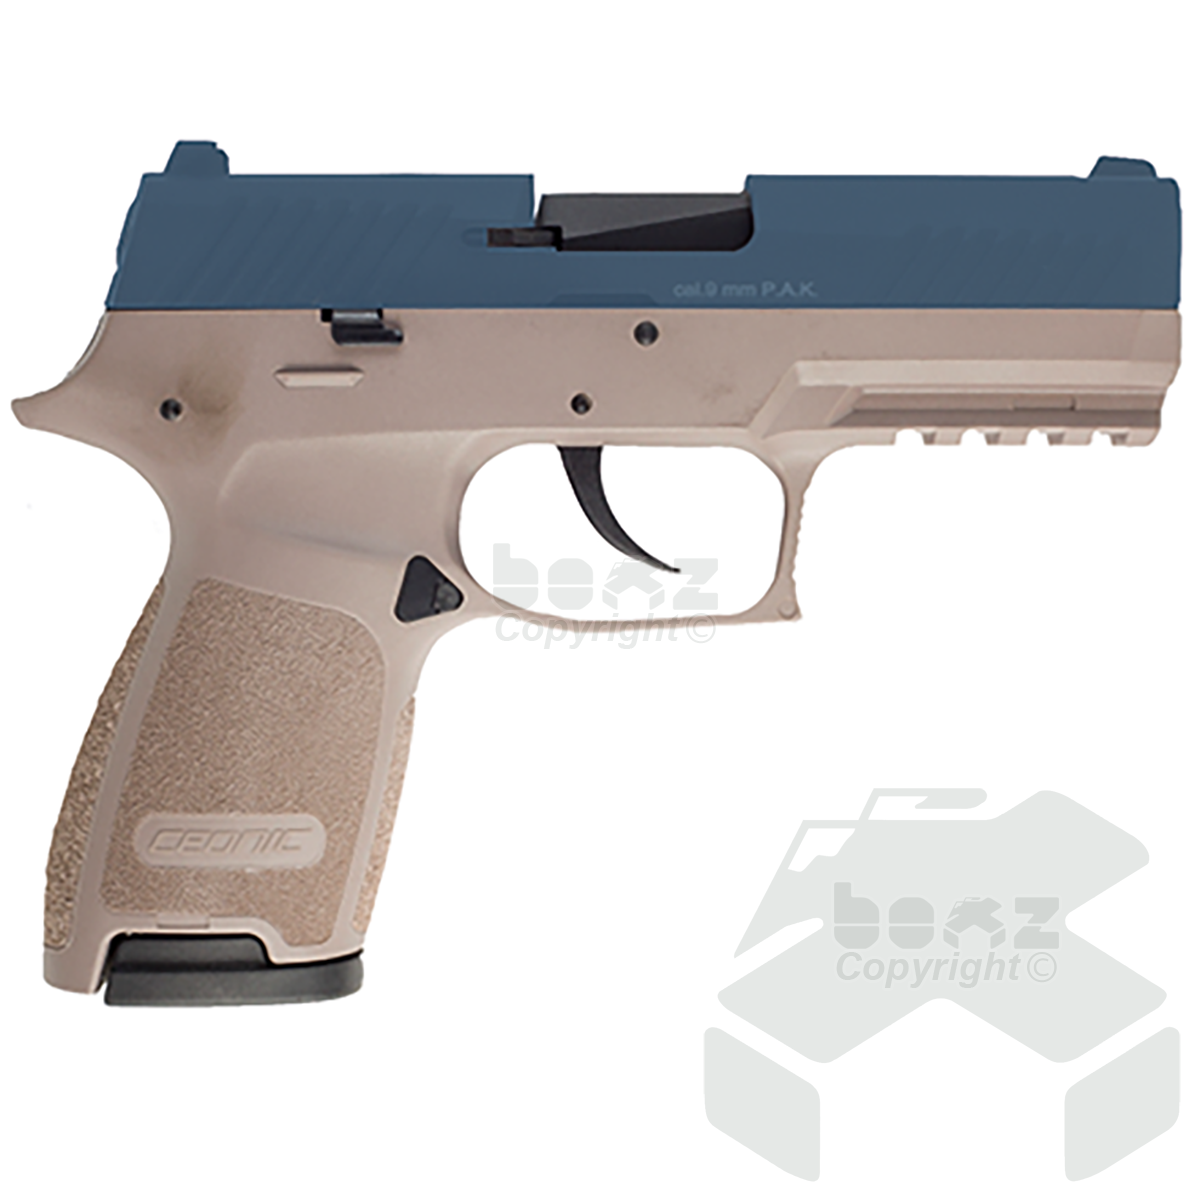 Ceonic P320 Blank Firing Pistol - 9mm - Blue Daybreak